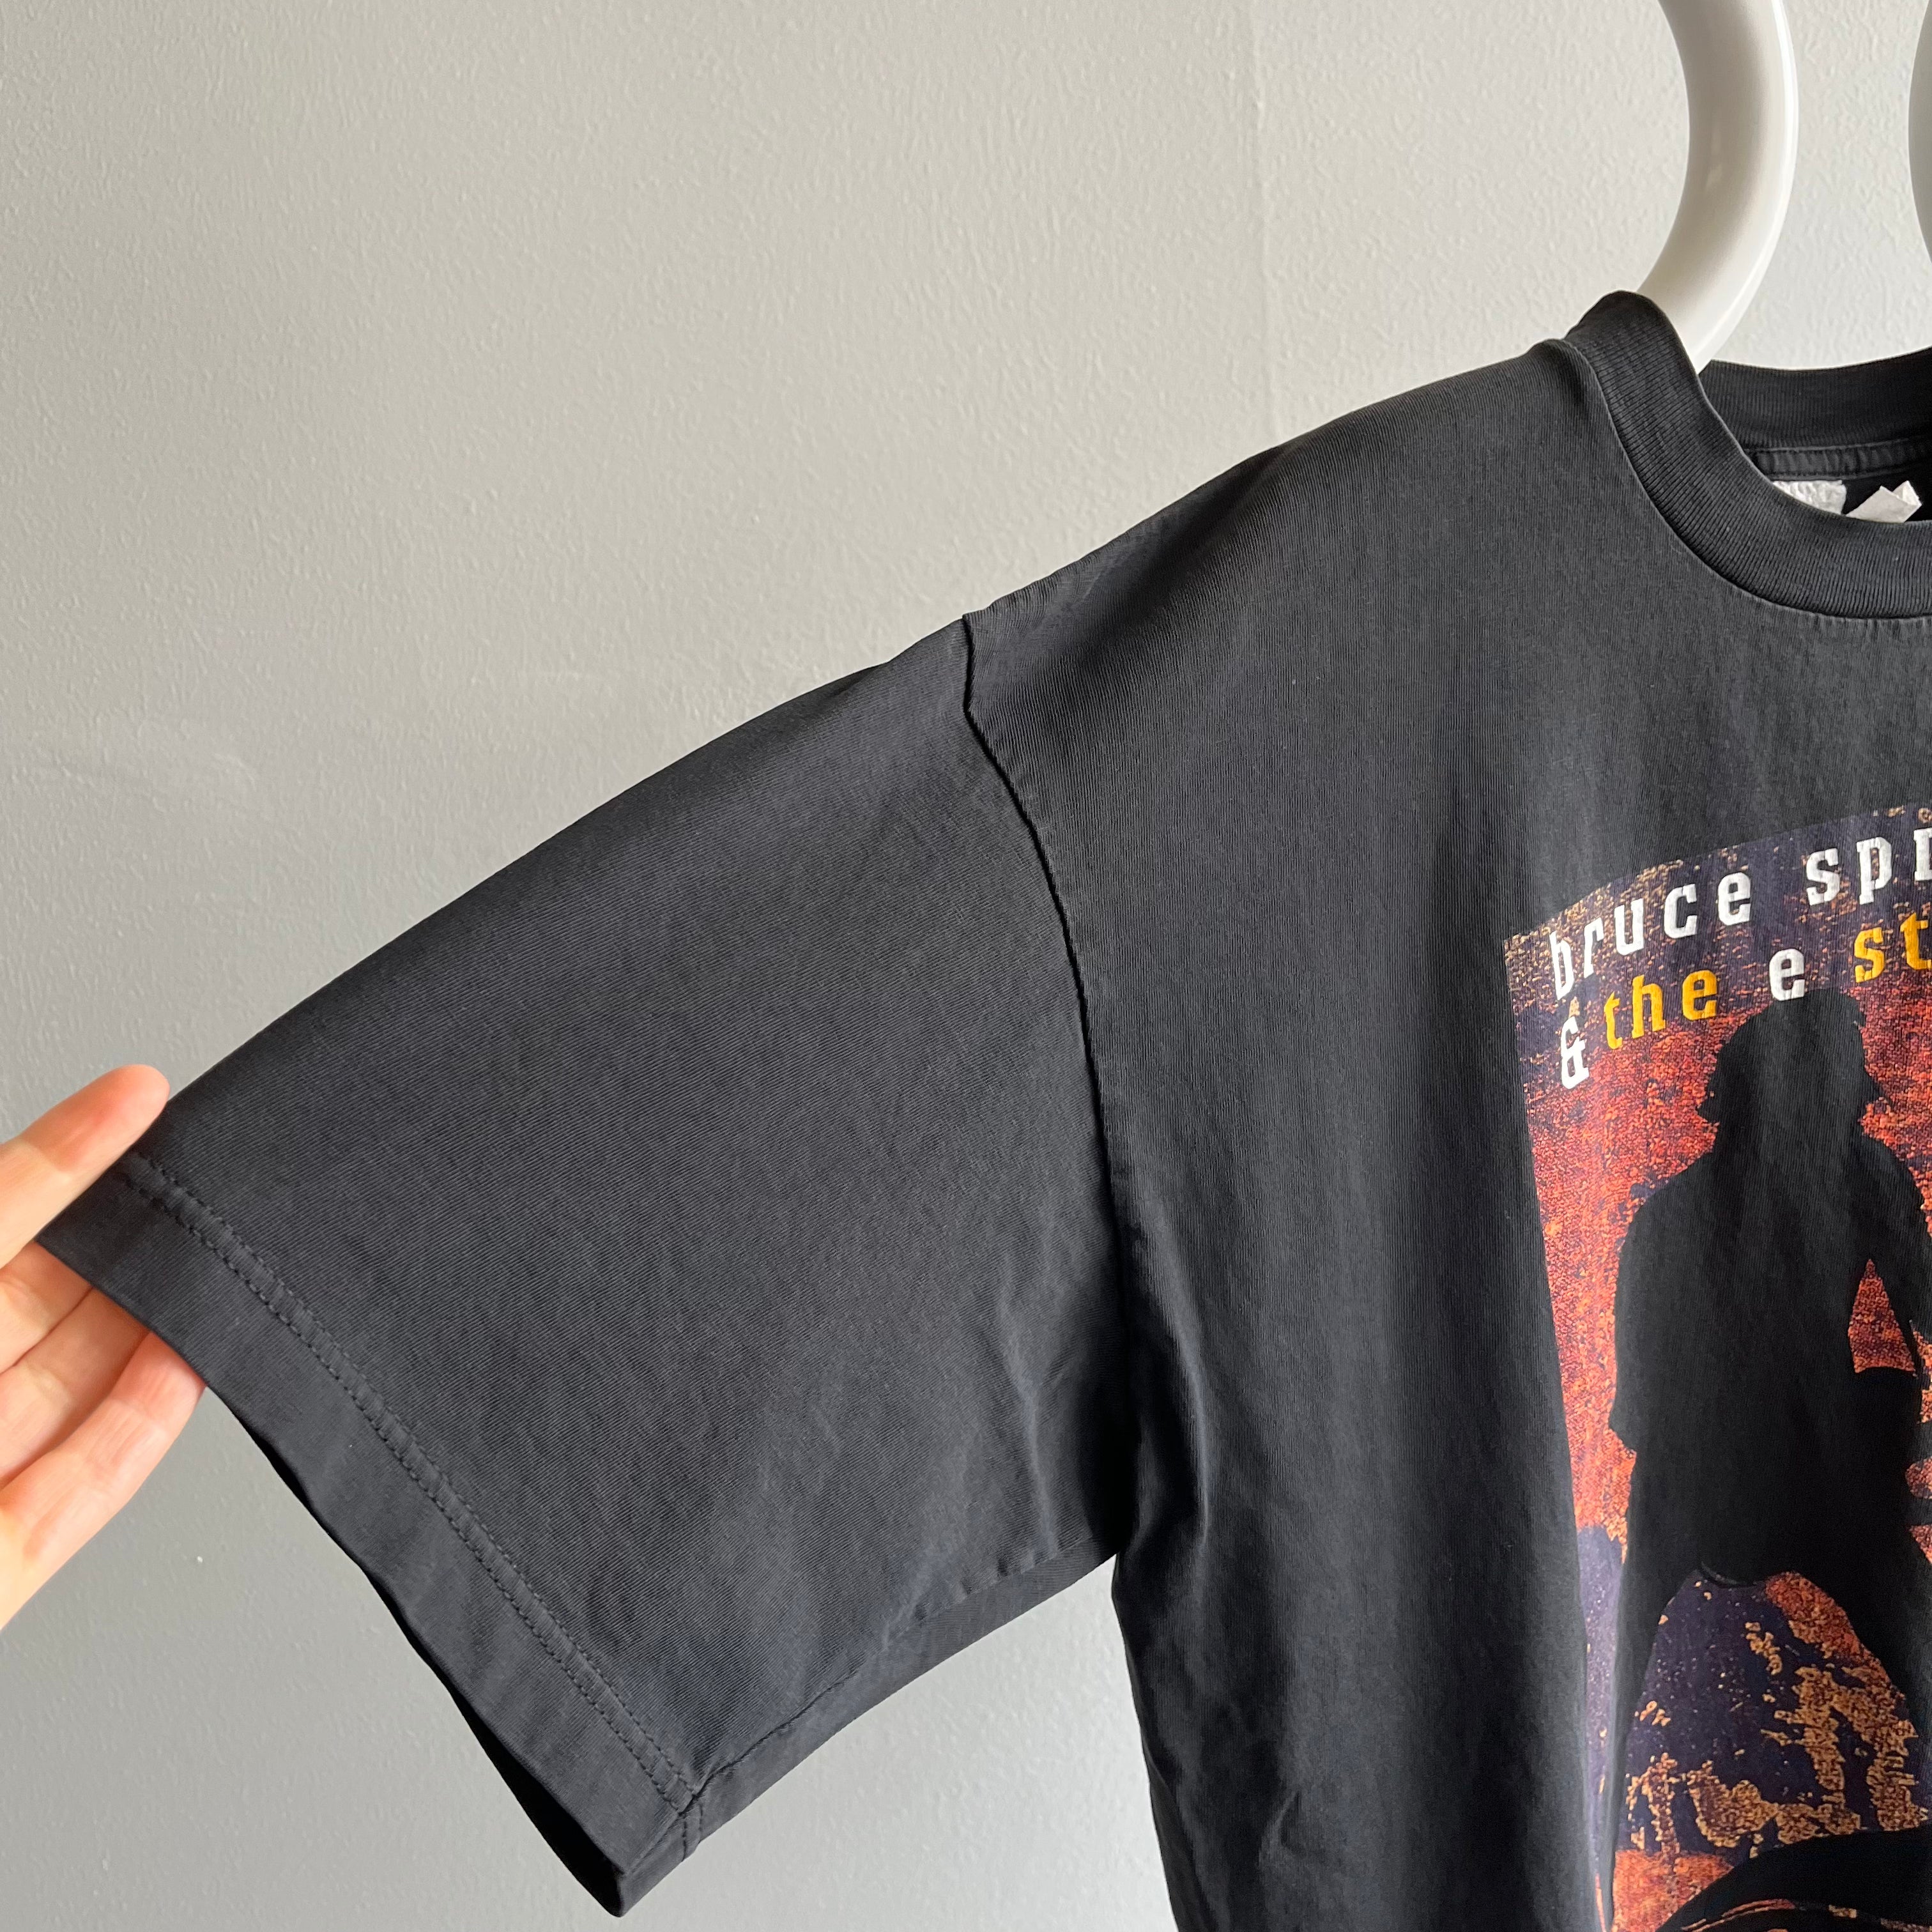 1999 Bruce Springsteen Tour T-Shirt